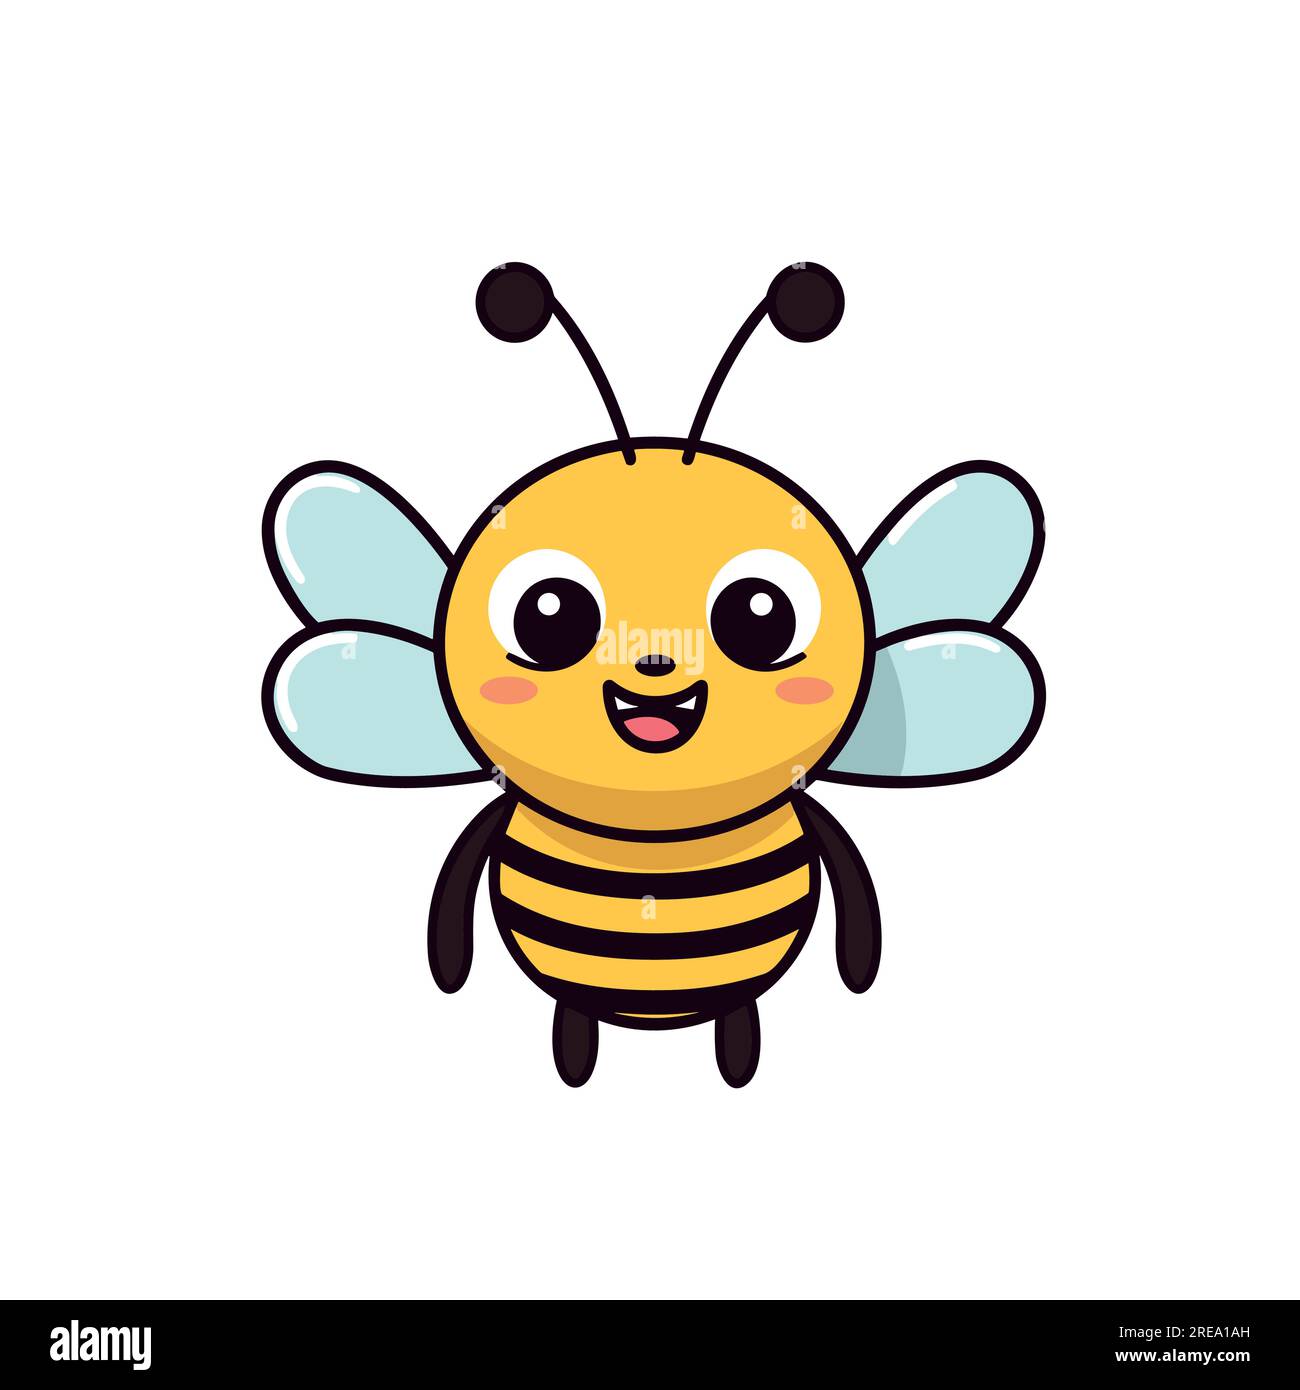 Nette, freundliche Biene. Cartoon glücklich fliegende Biene mit großen freundlichen Augen. Insektencharakter. Vektor auf Weiß isoliert Stock Vektor